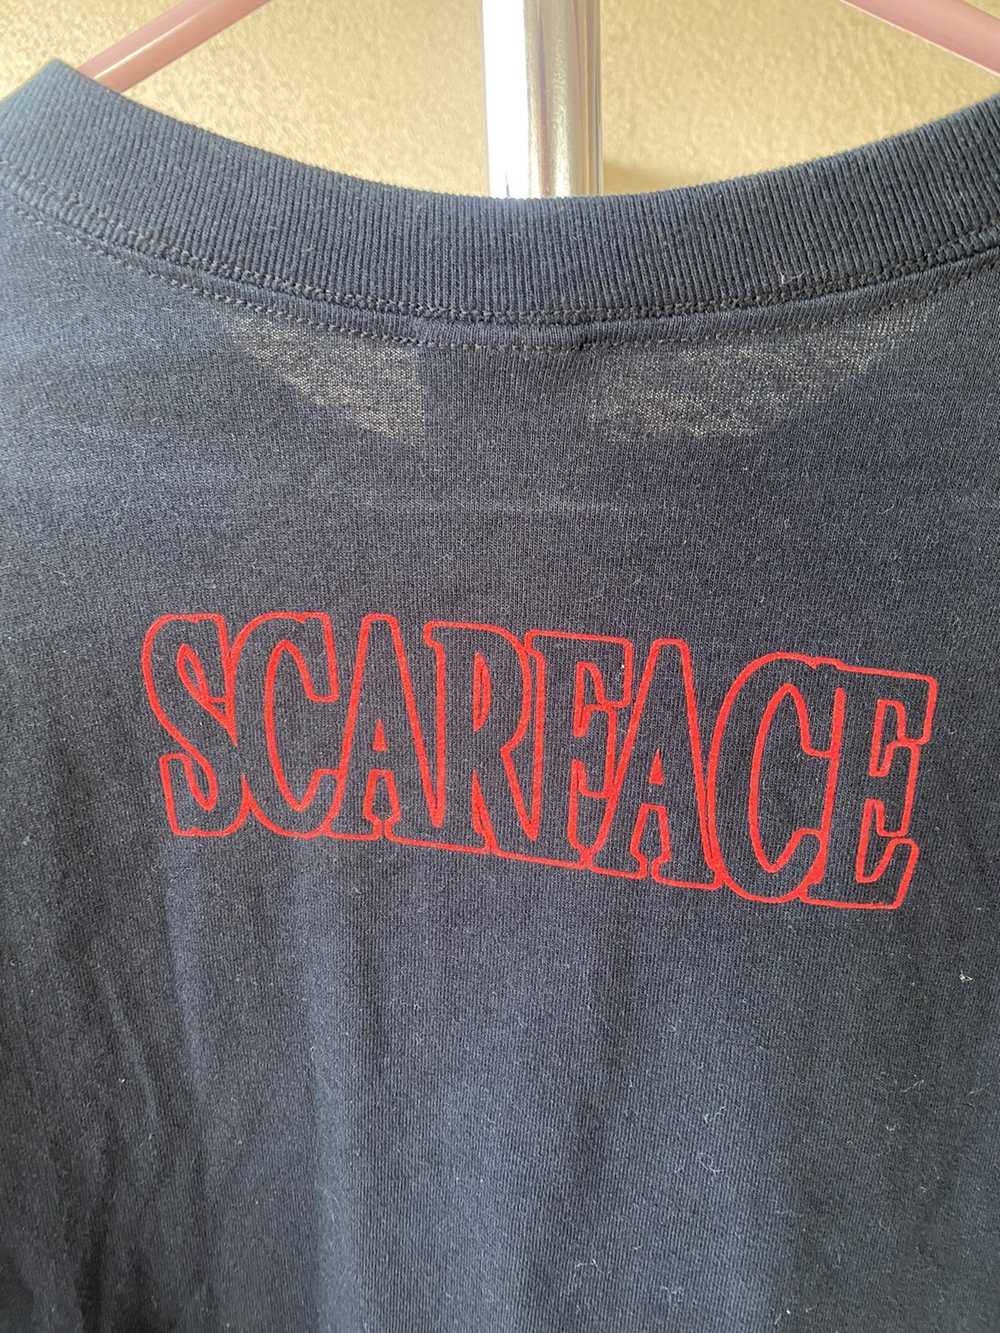 Movie Scareface shirt - image 5